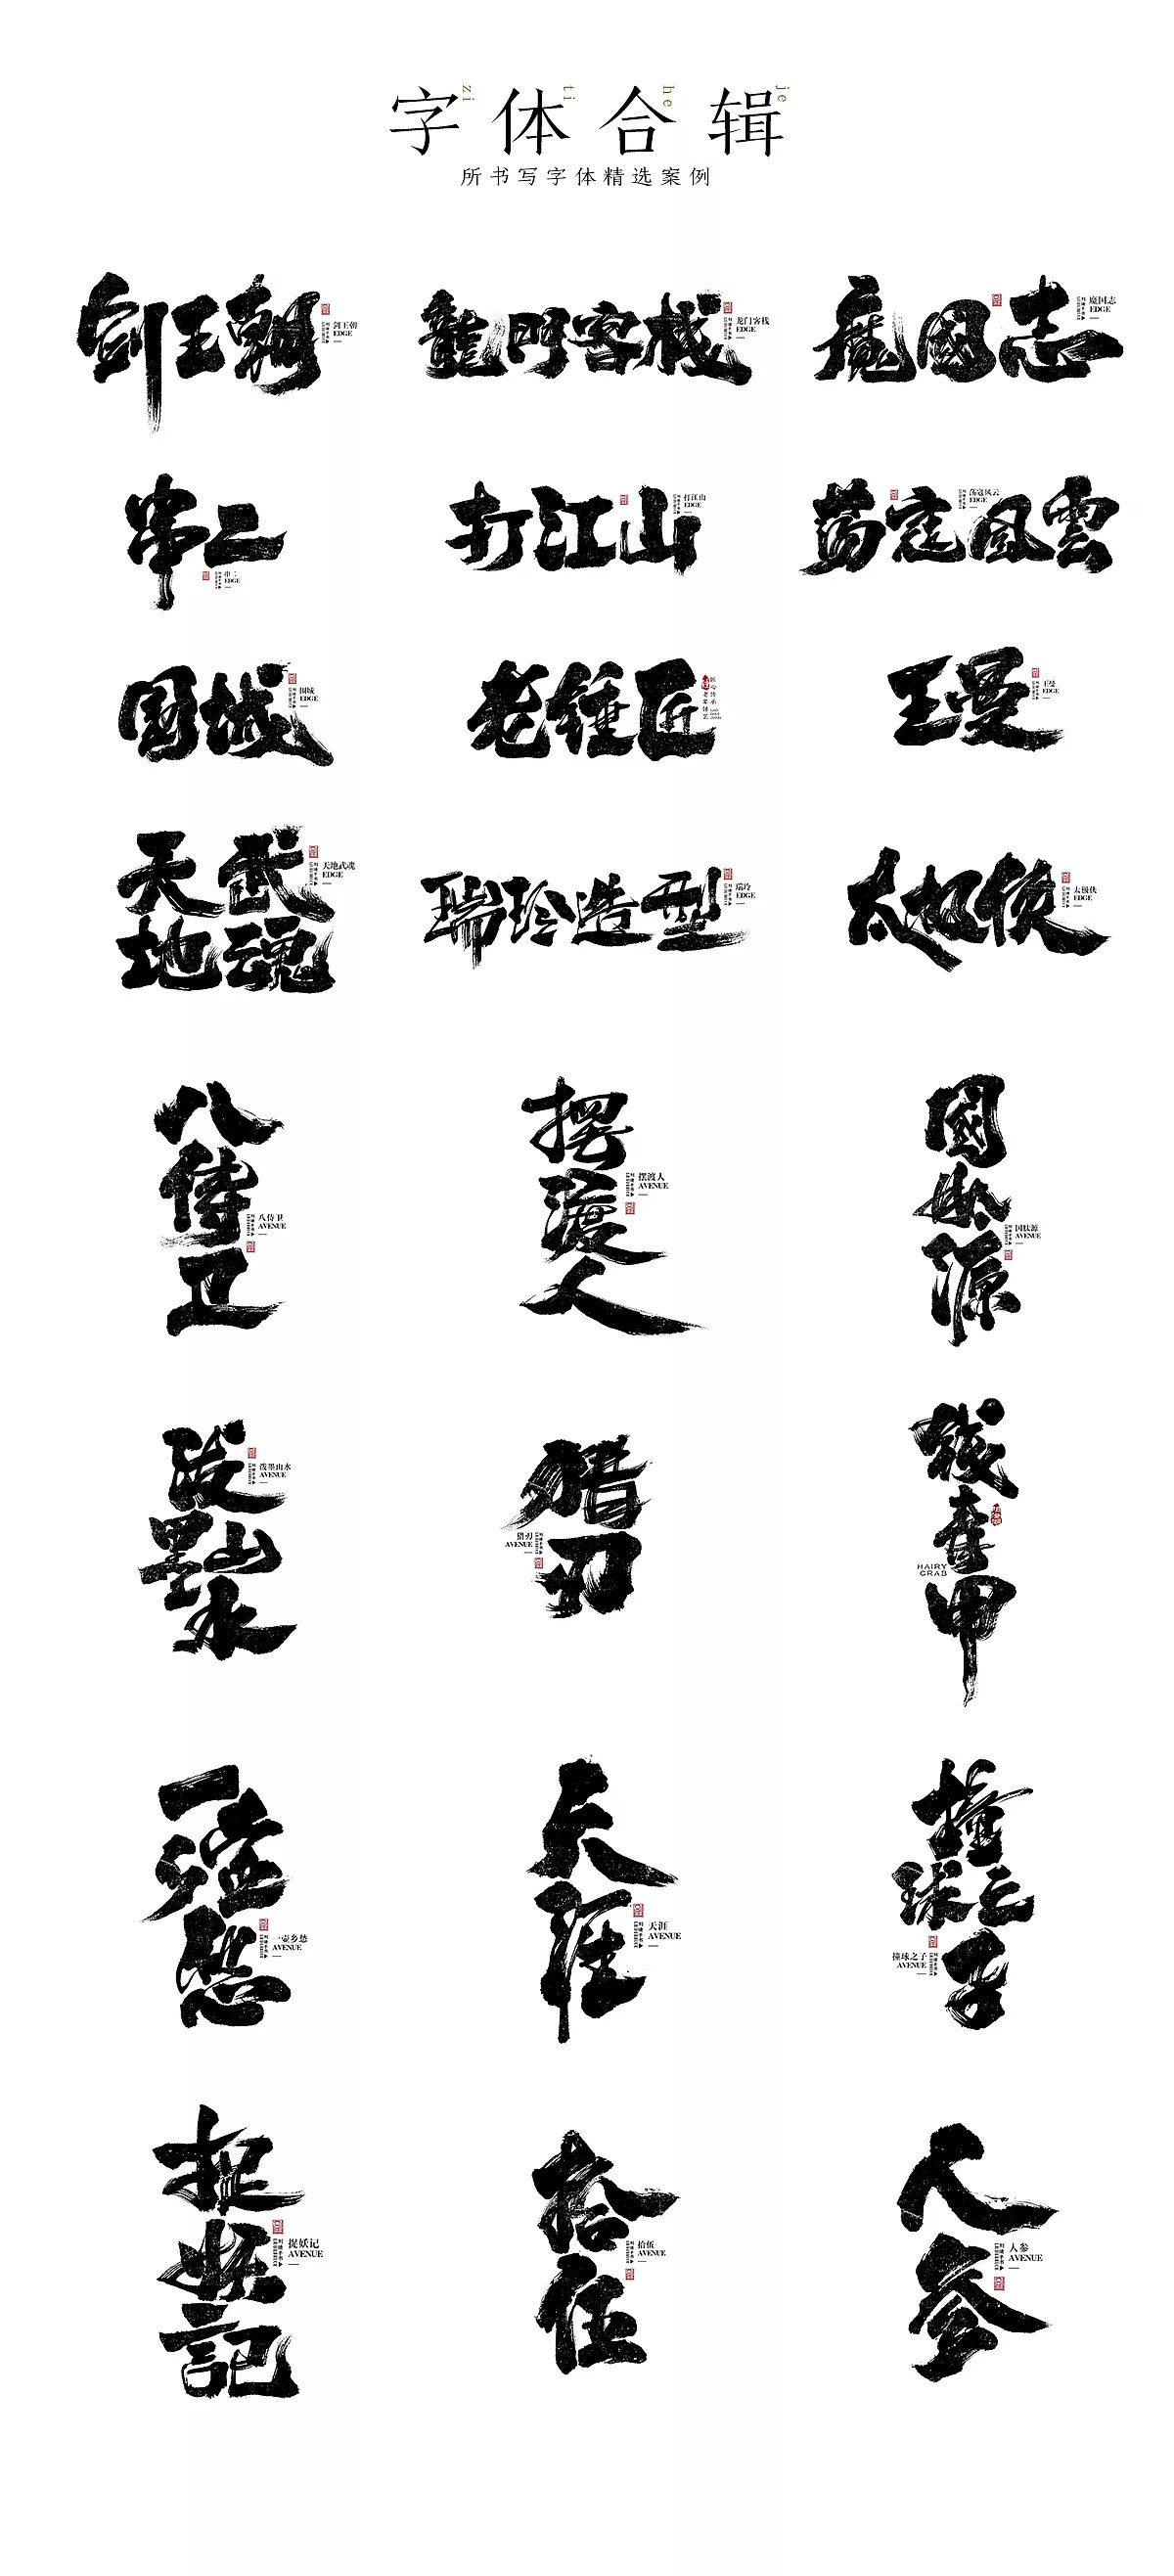 30P Liu Di / BRUCE - Calligraphy Font